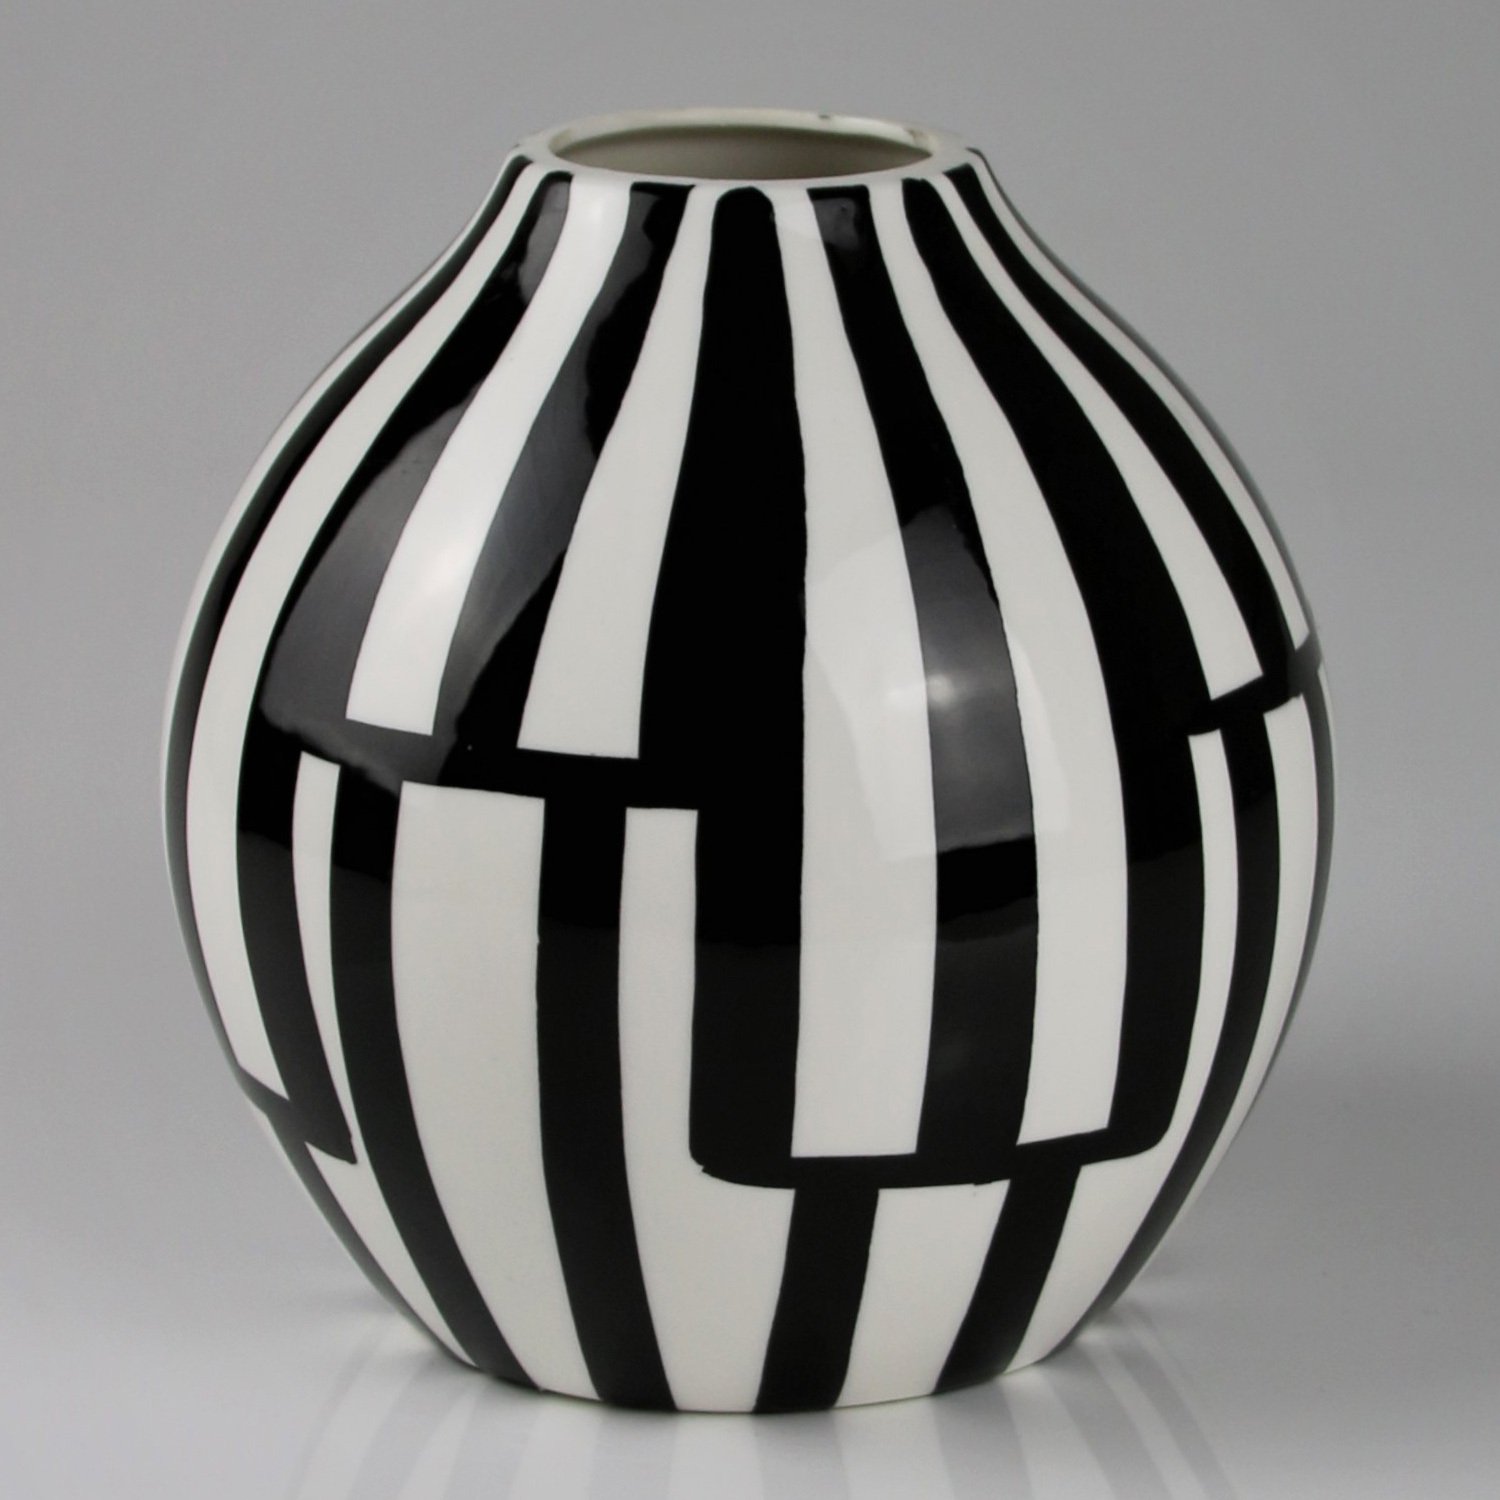 Keramikvase mit geometrischem Muster, schwarzweiß, Ø 17 x H 17 cm